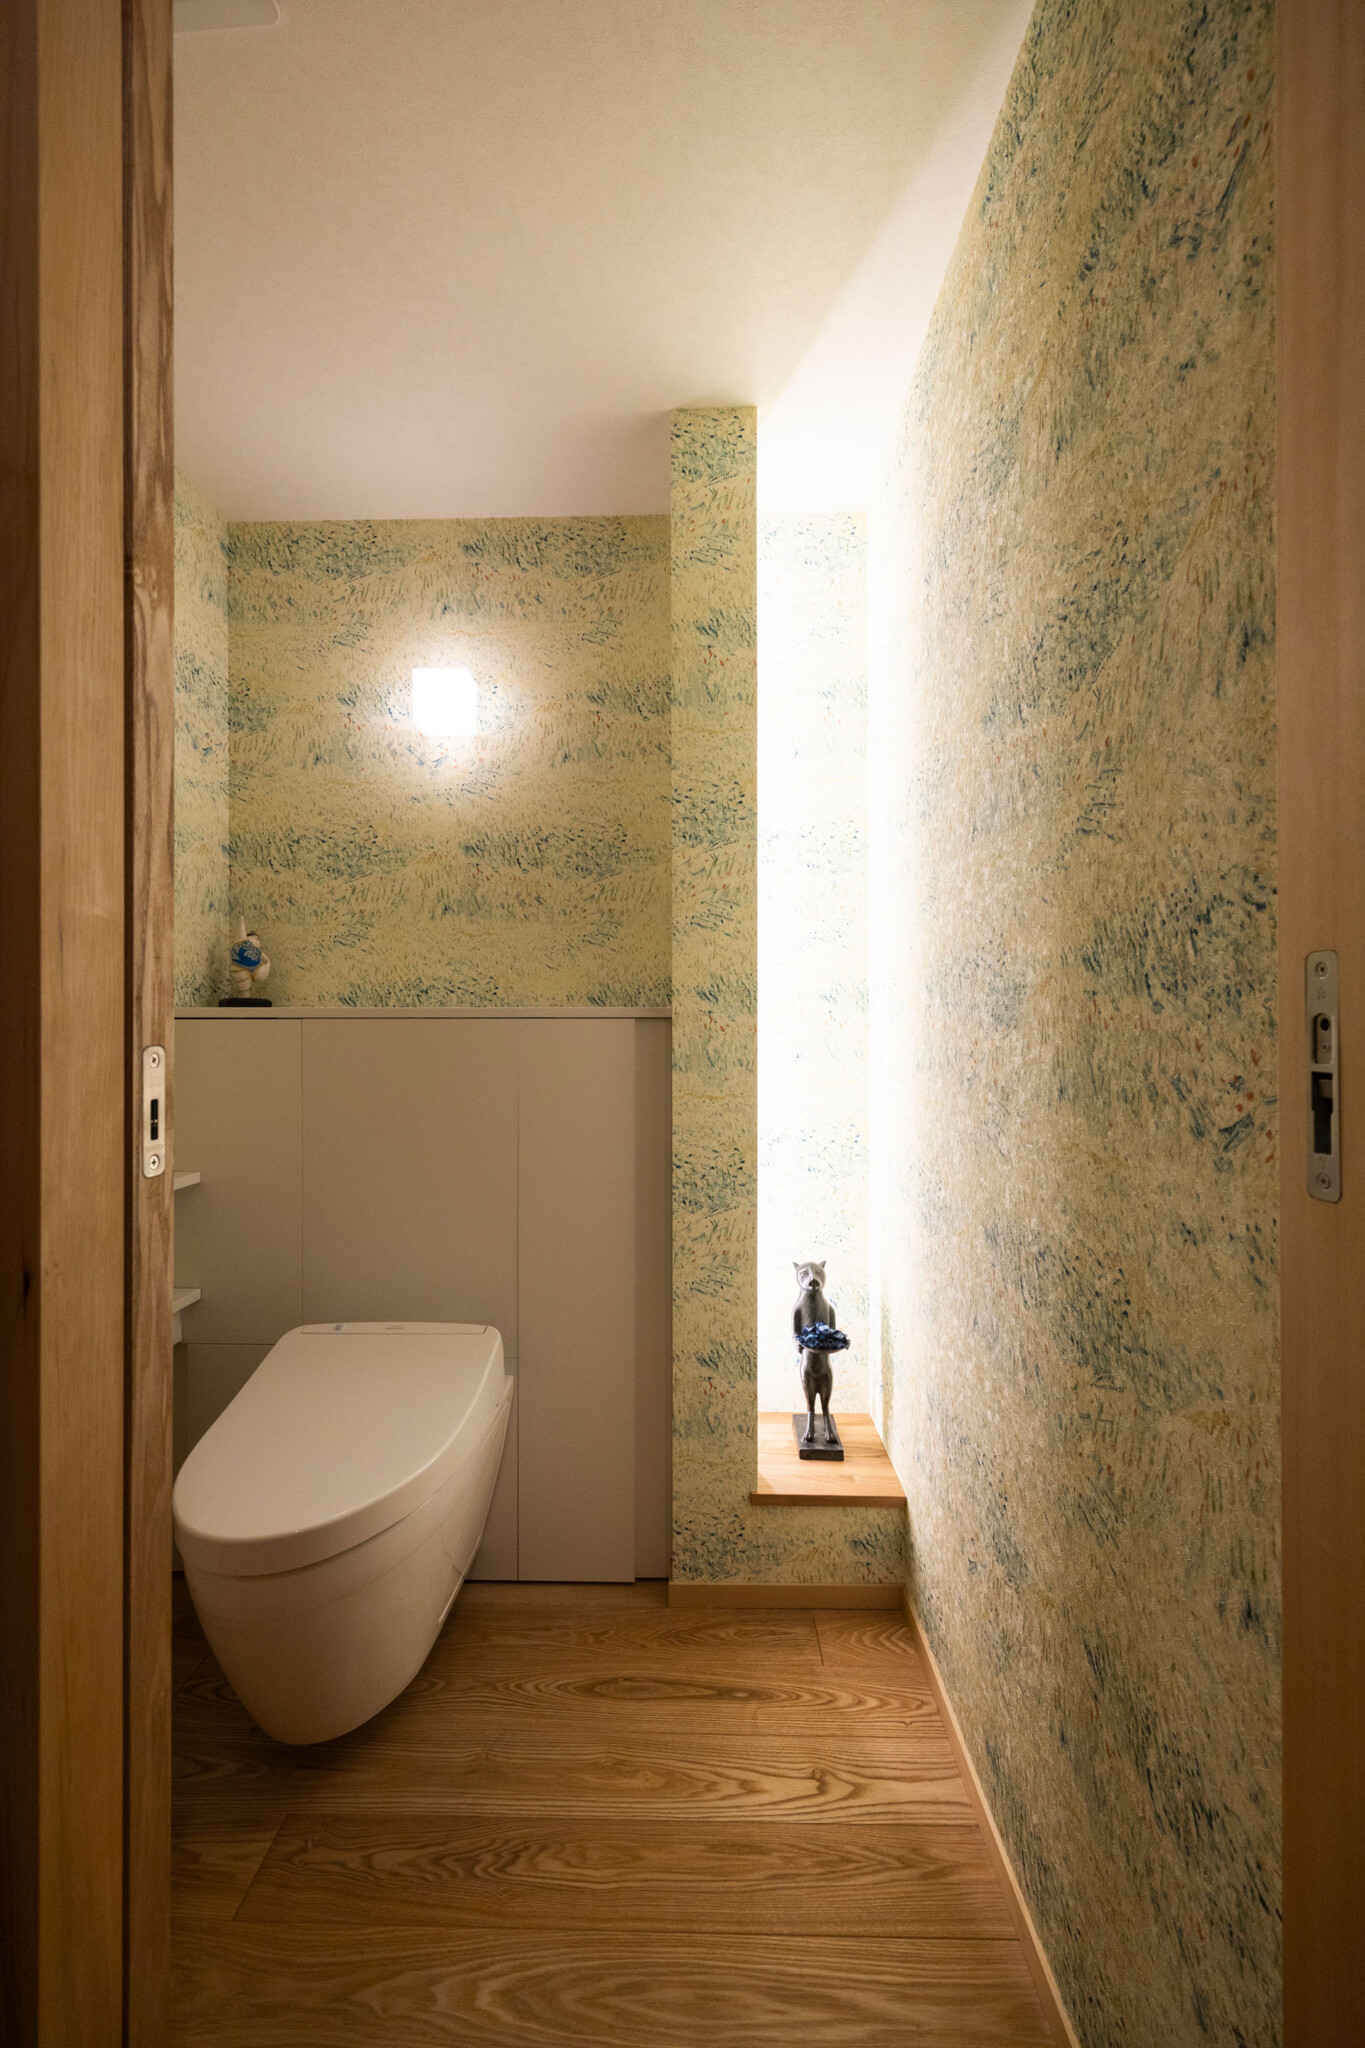 ドアを開けると雰囲気が切り替わるトイレ。ゴッホの絵をモチーフとしたオランダの壁紙をセレクト。トイレは掃除が楽なフロートタイプに。